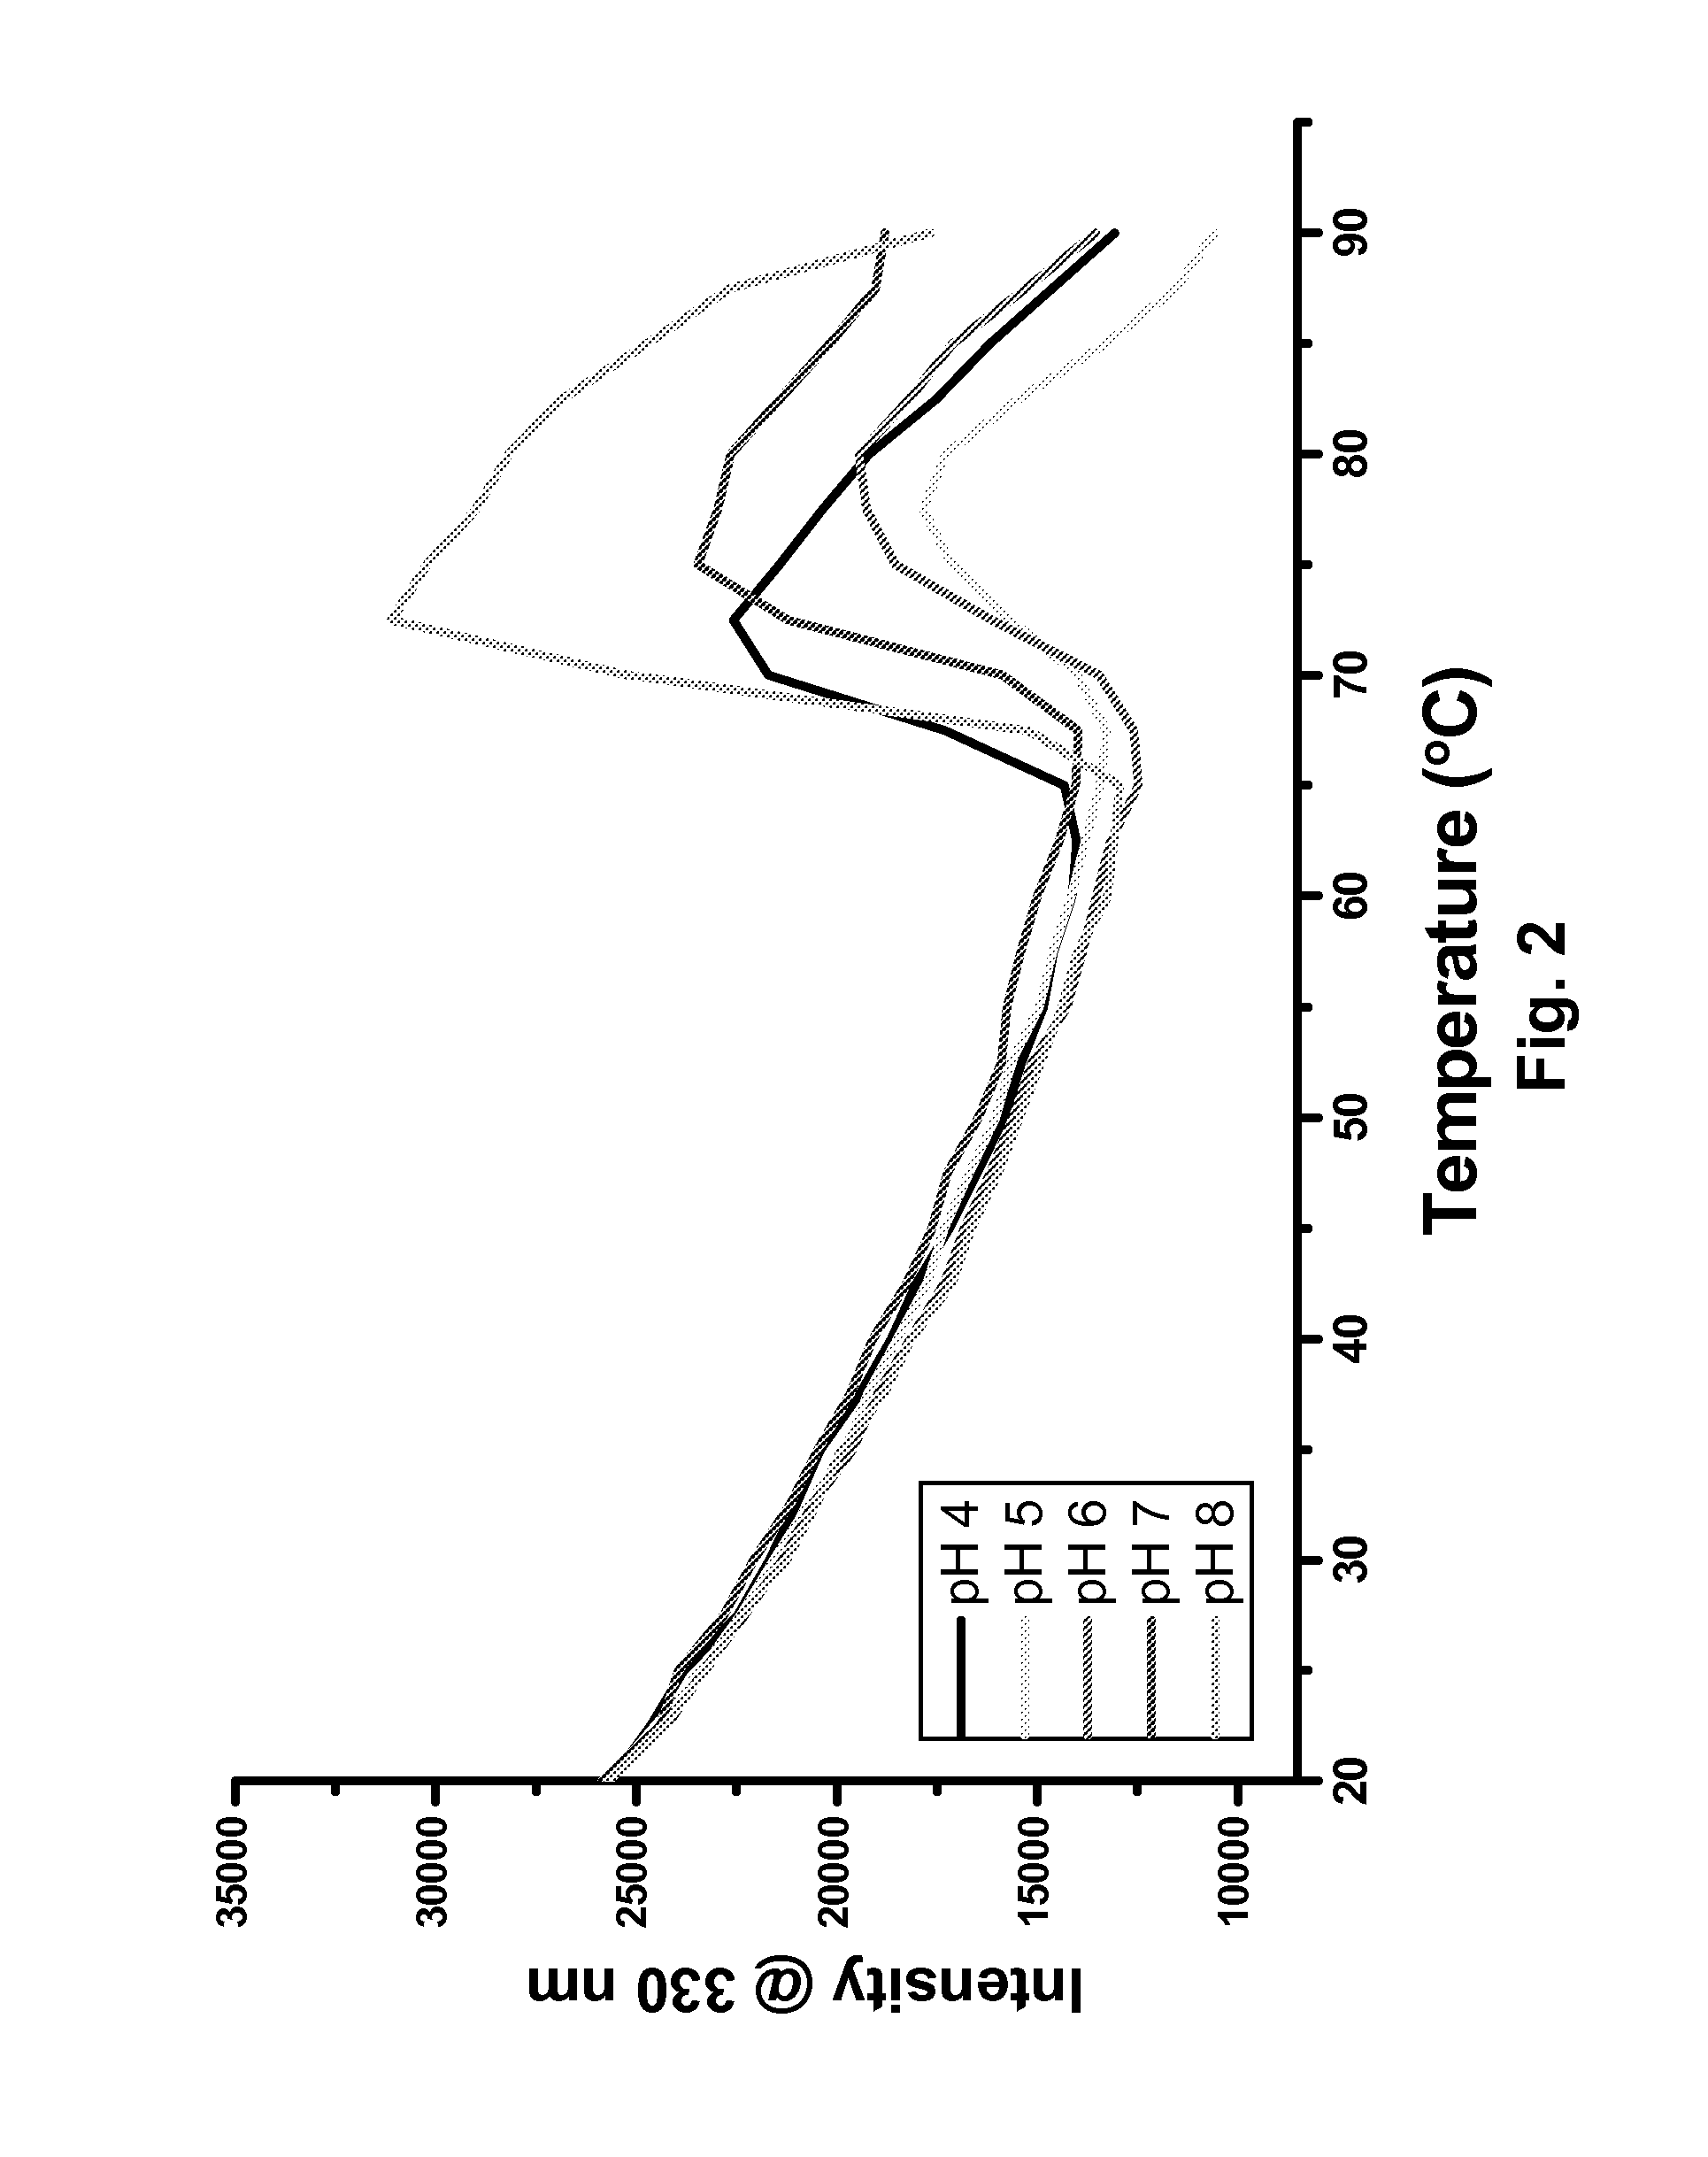 Antibody formulation